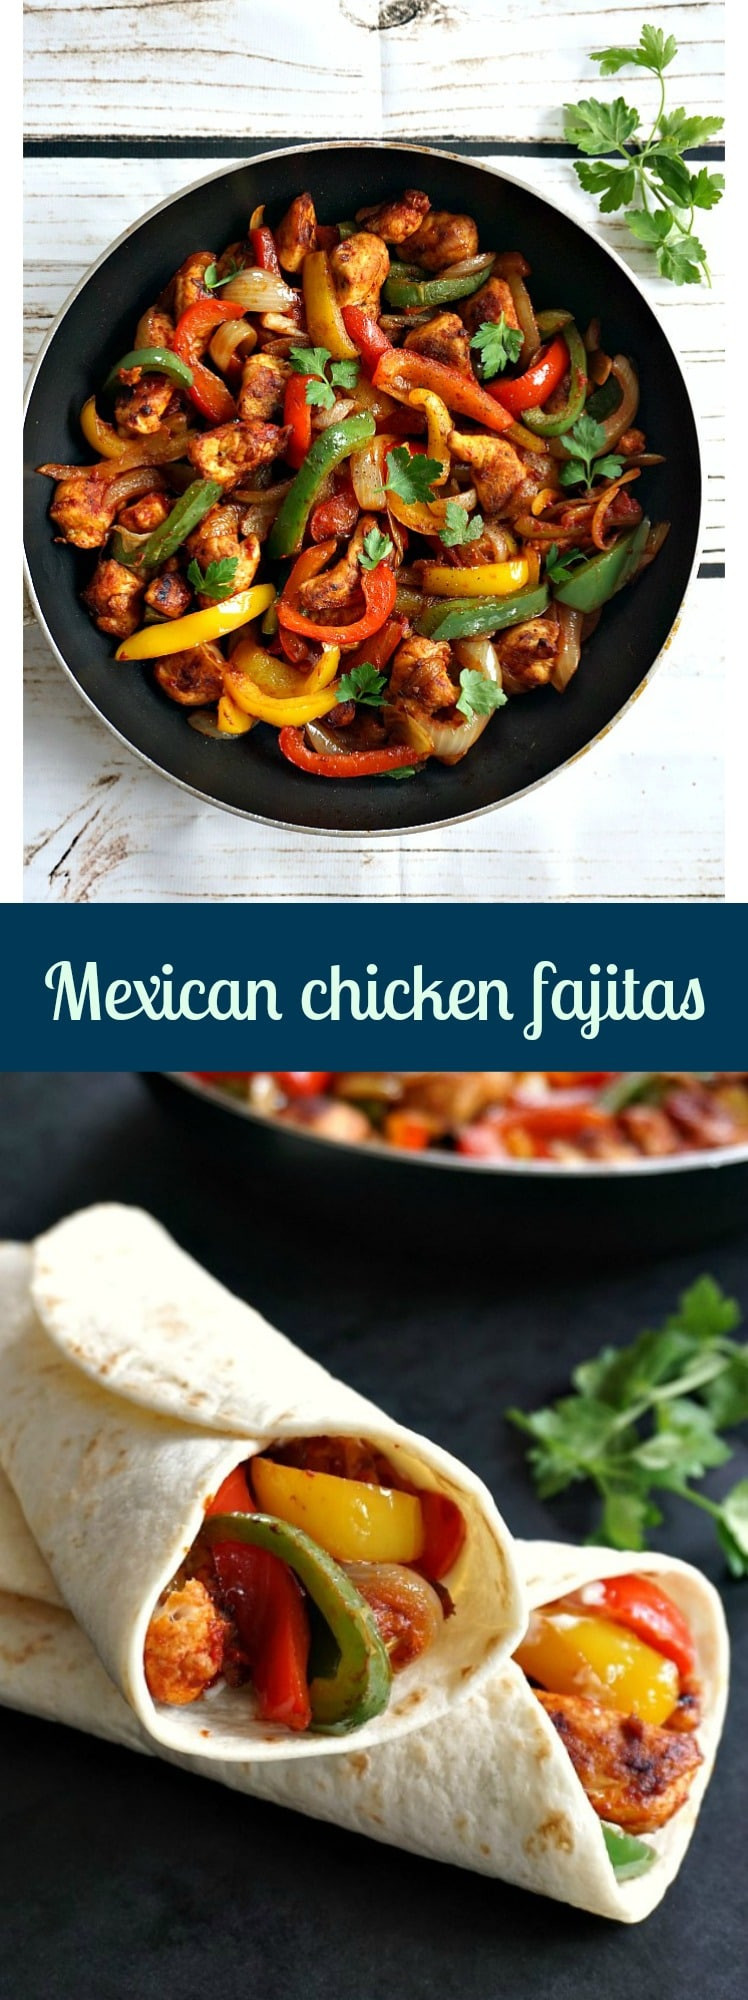 Mexican Chicken Fajita Recipes
 Mexican chicken fajitas